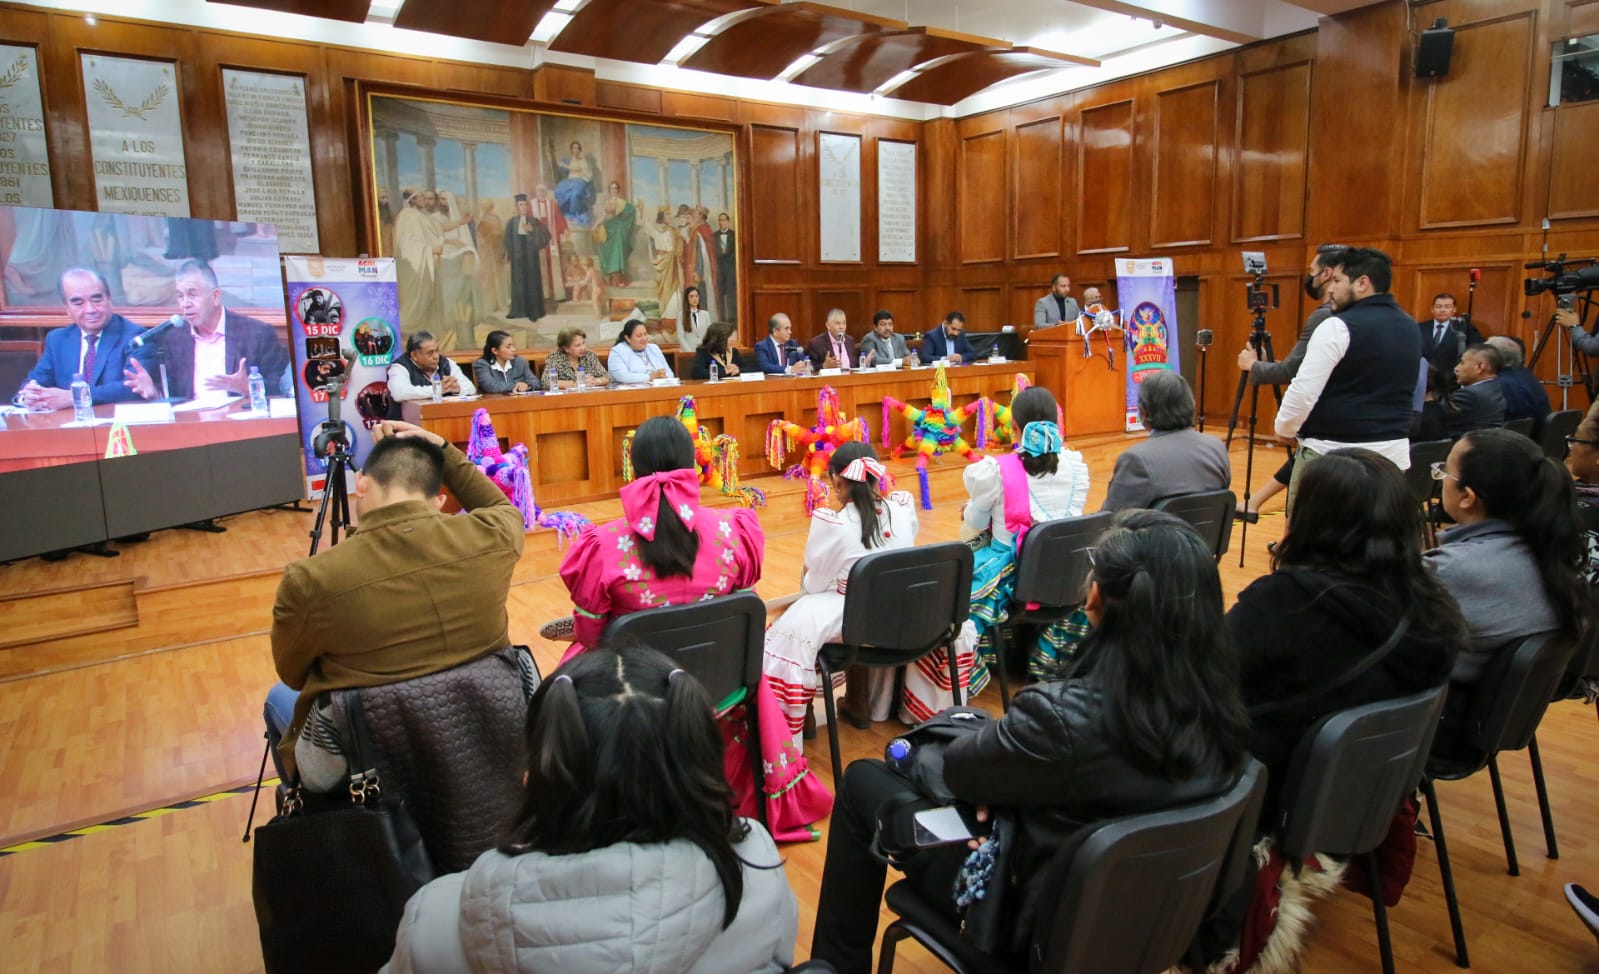 Presentan Feria Internacional de la Piñata en Acolman 2022